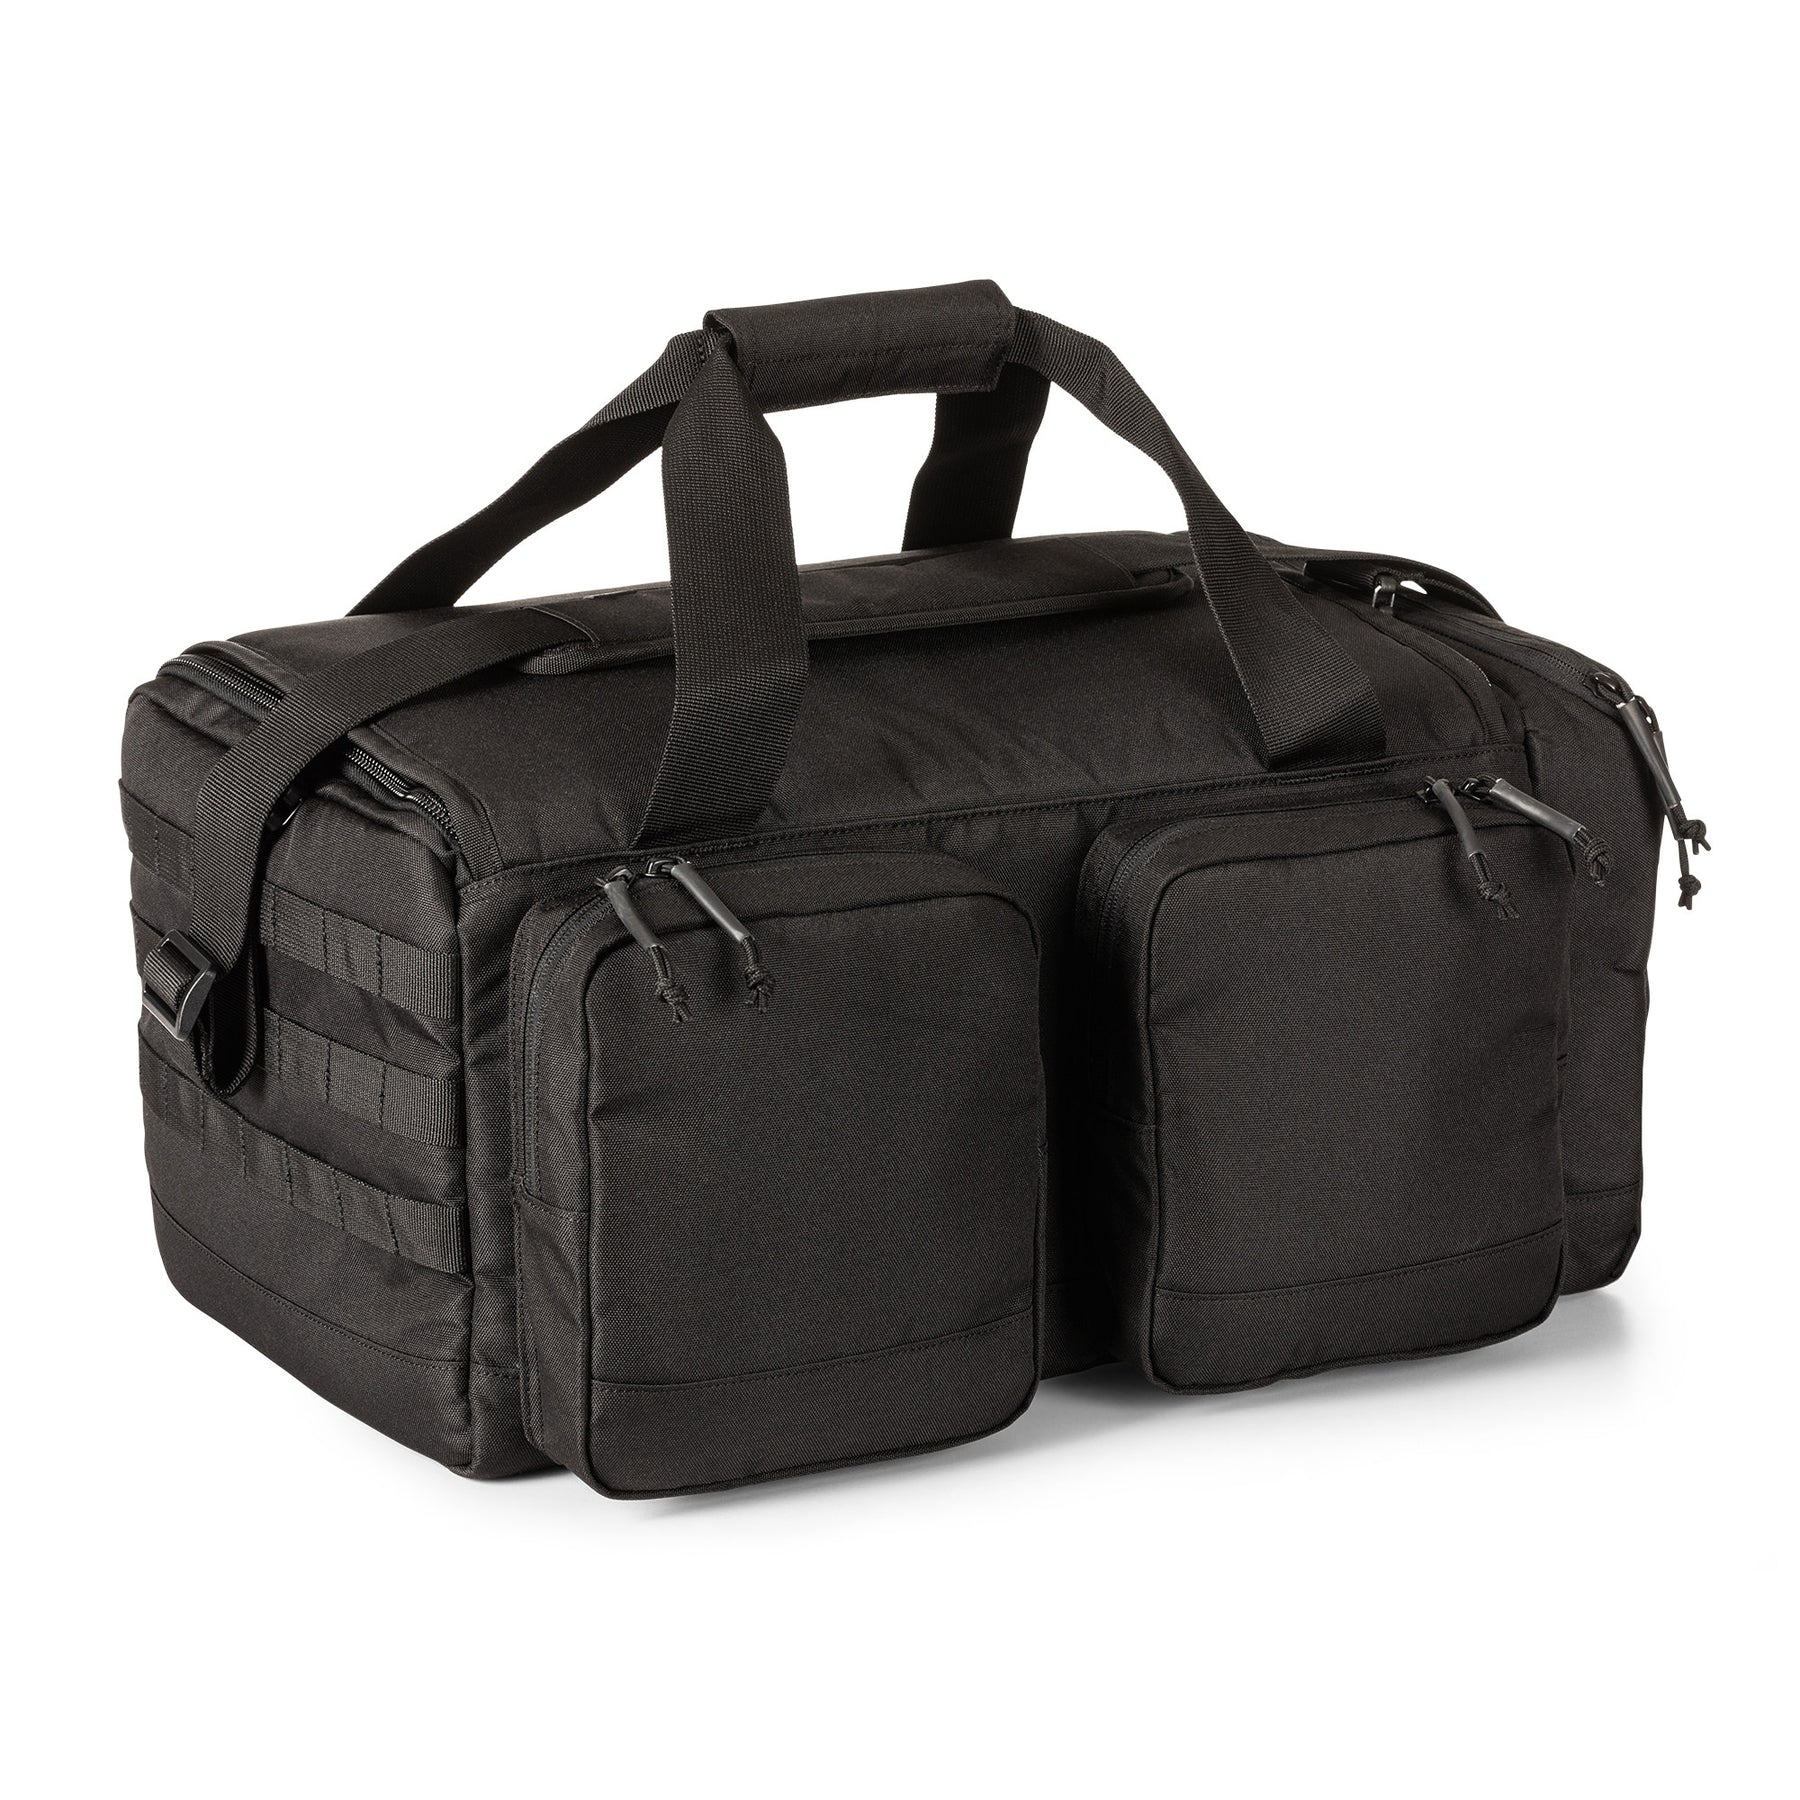 Range Ready Trainer Bag di 5.11 nera vista retro inclinata chiusa